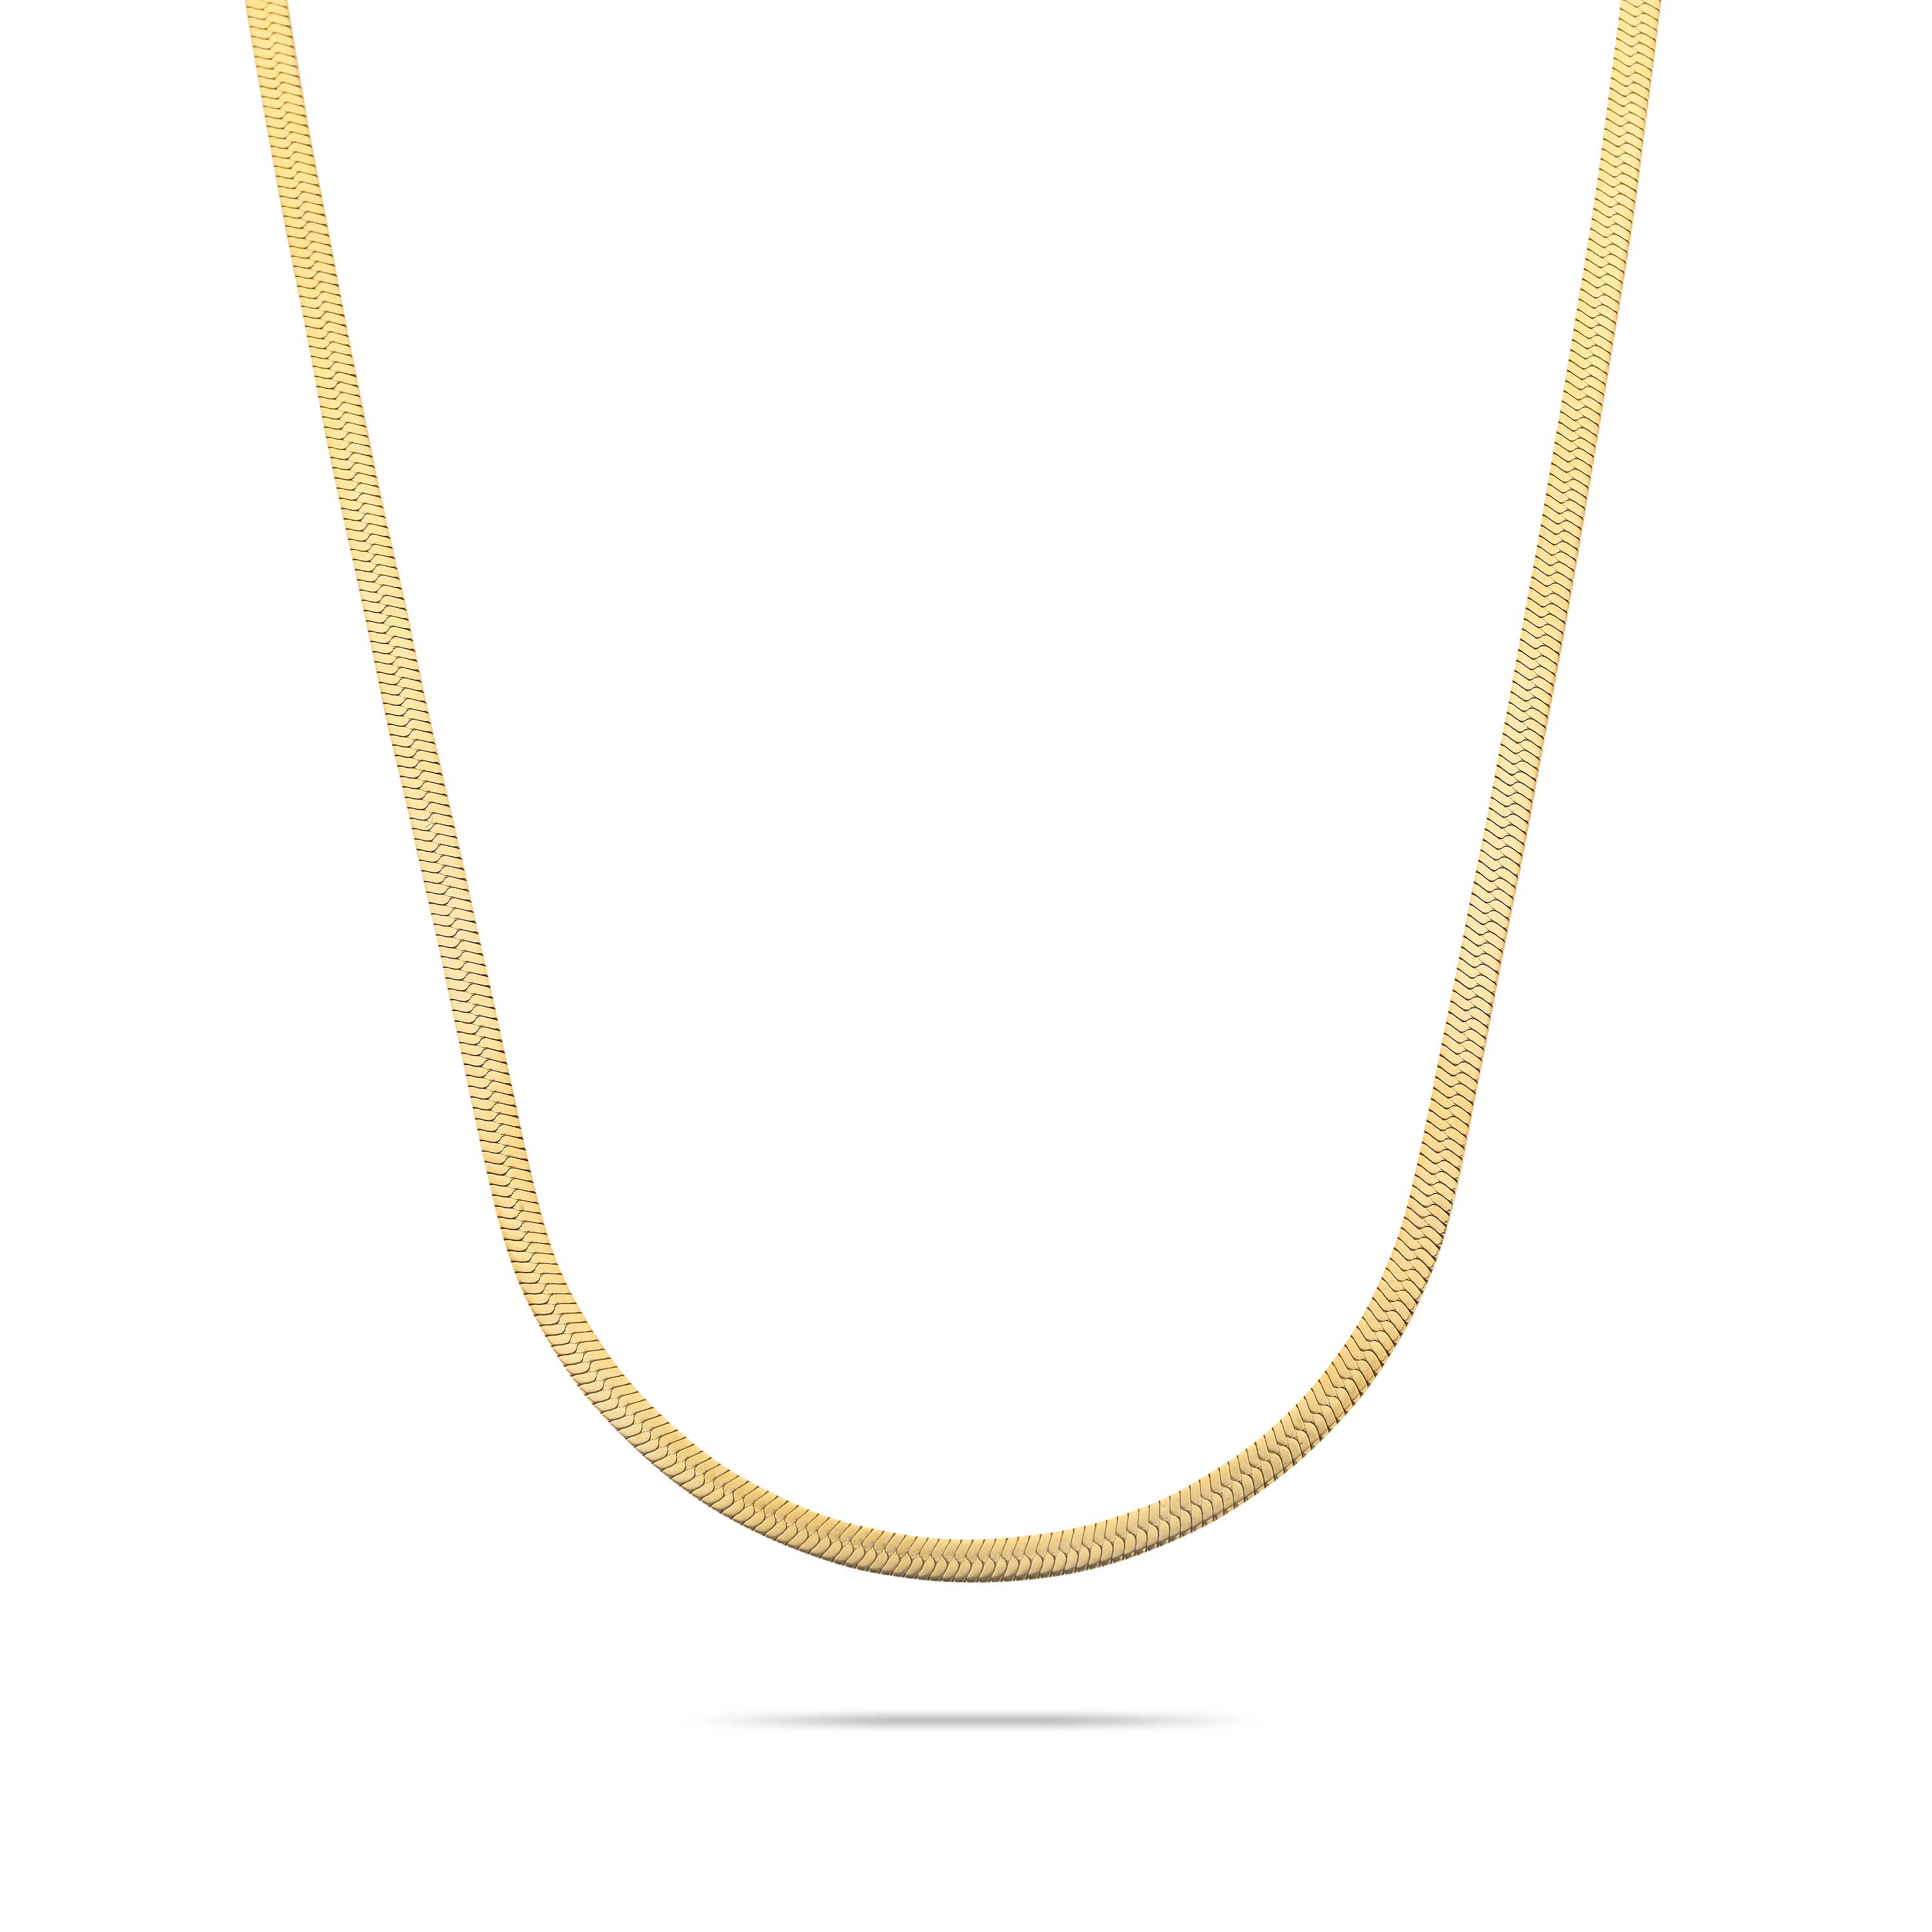 Snake necklace gold